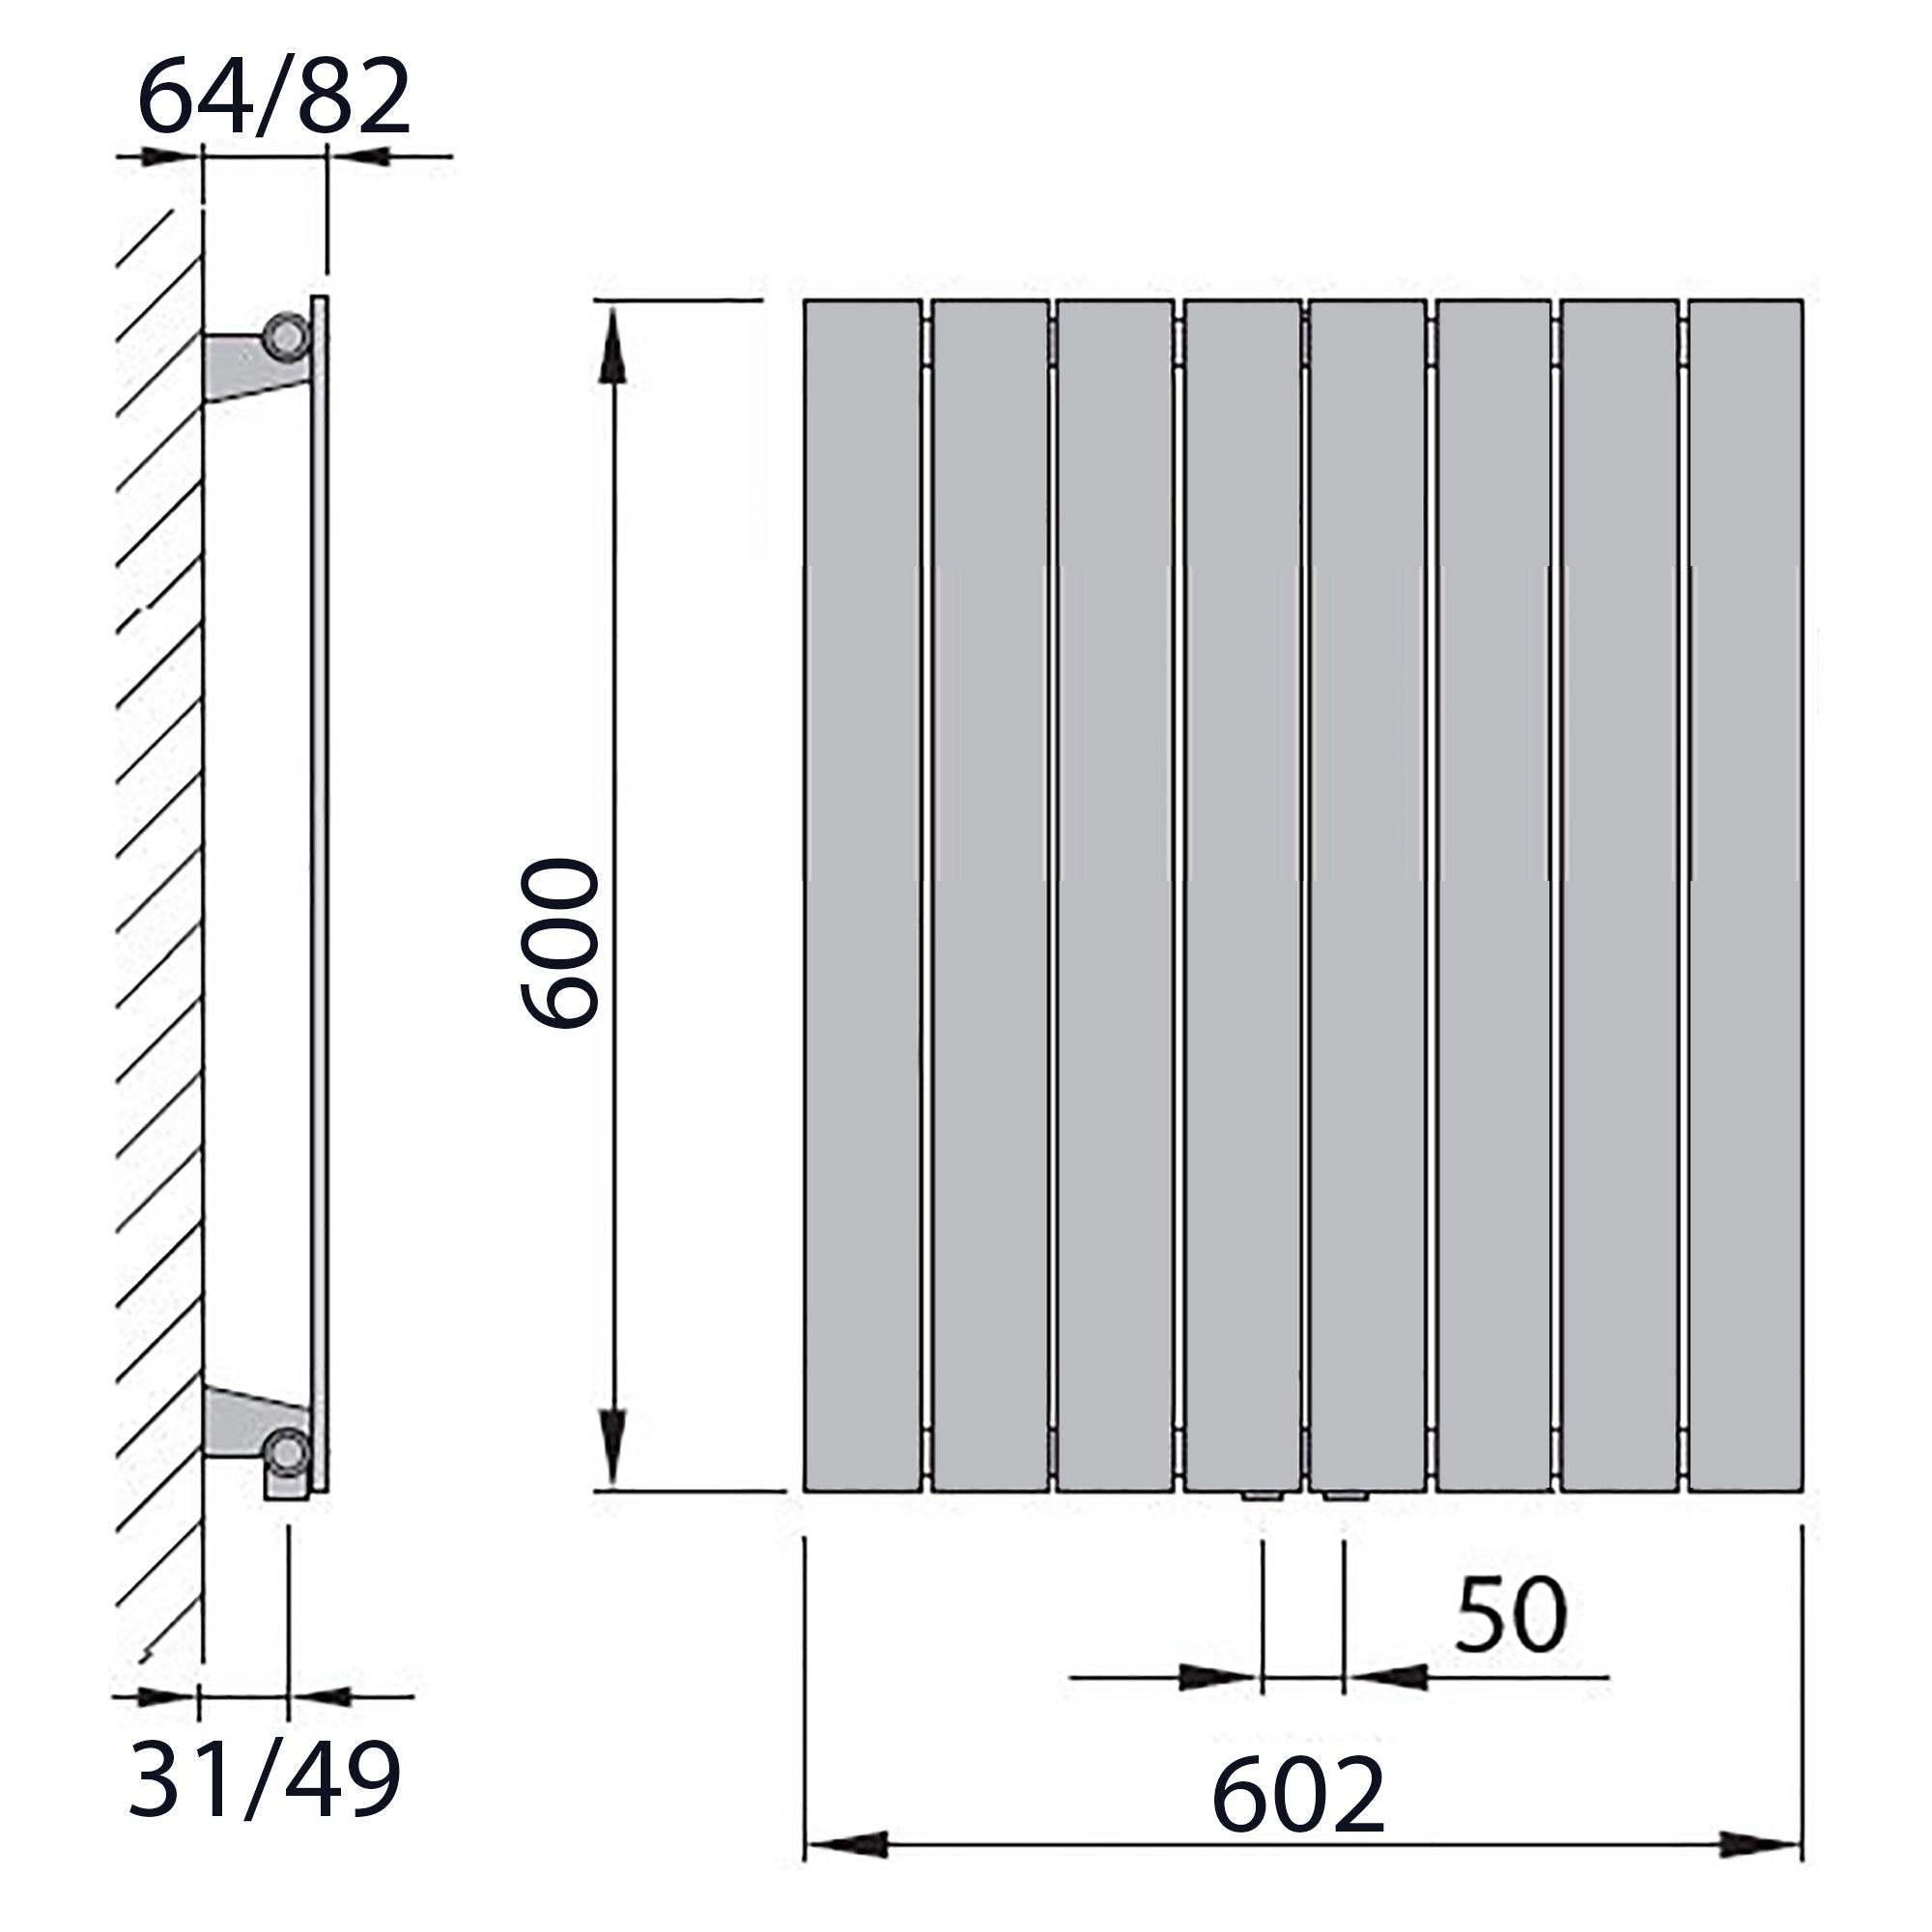 Design Paneelheizkörper vertikal 600 x 602 weiß Heizkörper Badheizkörper flach Badezimmer Heizung technische Zeichnung - heizkoerper.shop